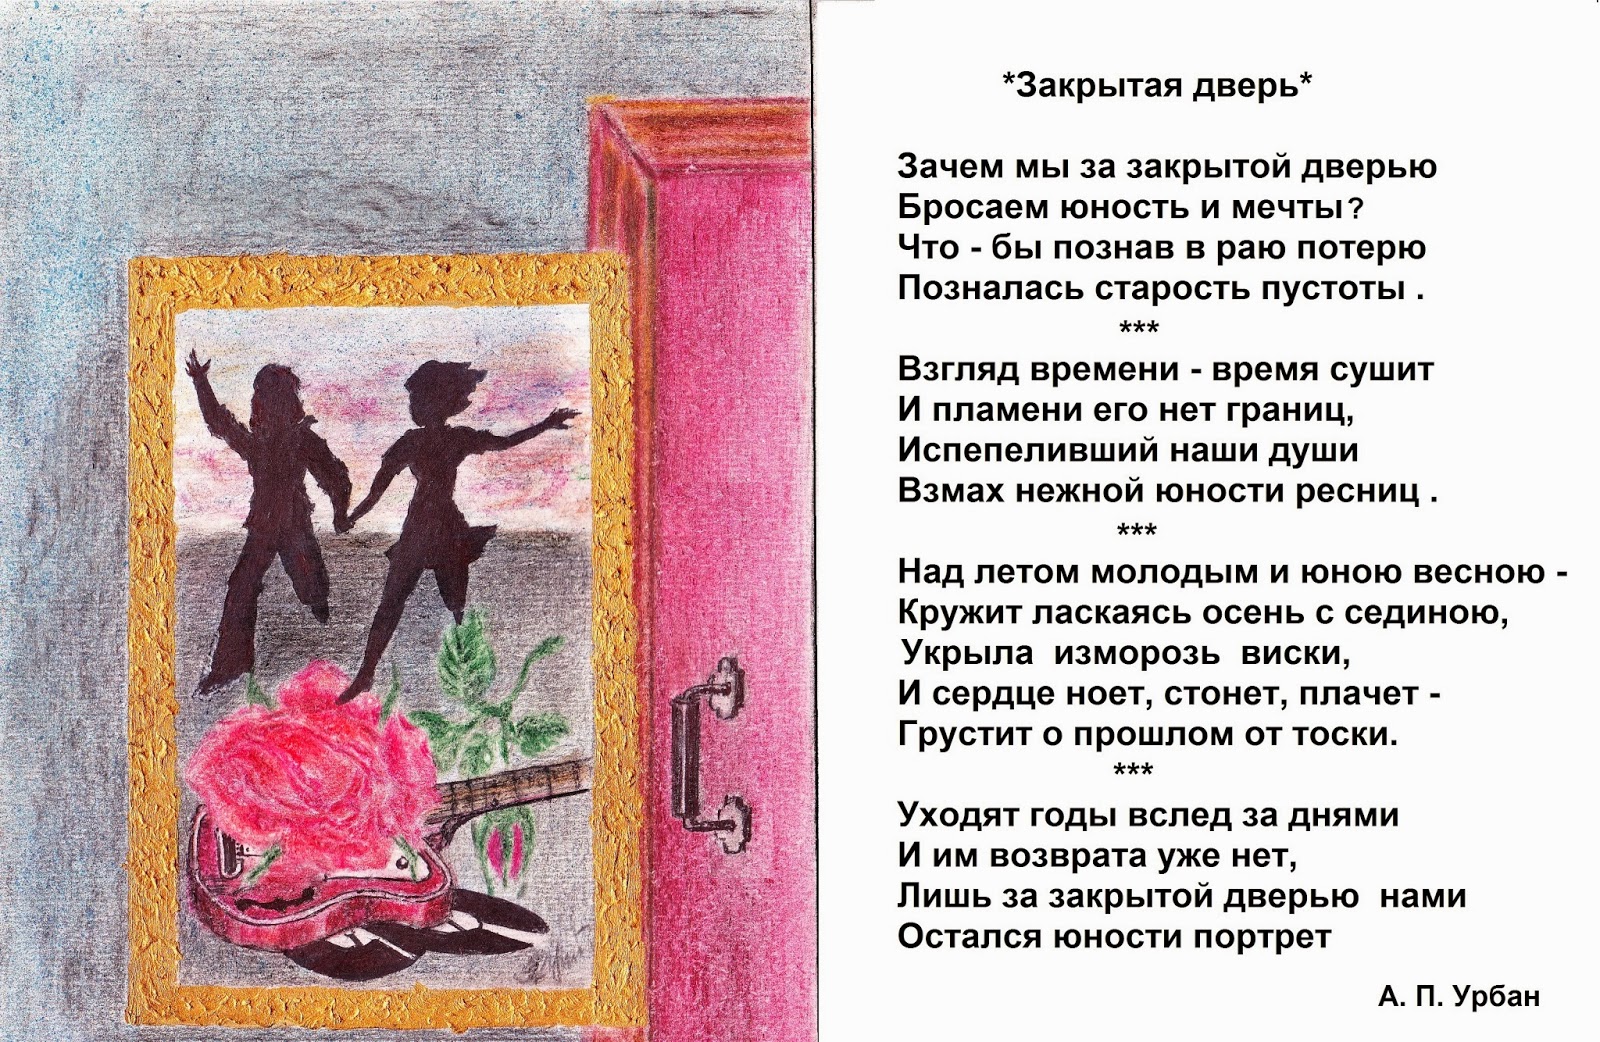 Закрой дверь. Мечты юности. Ваня Дмитриенко стих закрытая дверь. Рассказ запертые двери 5